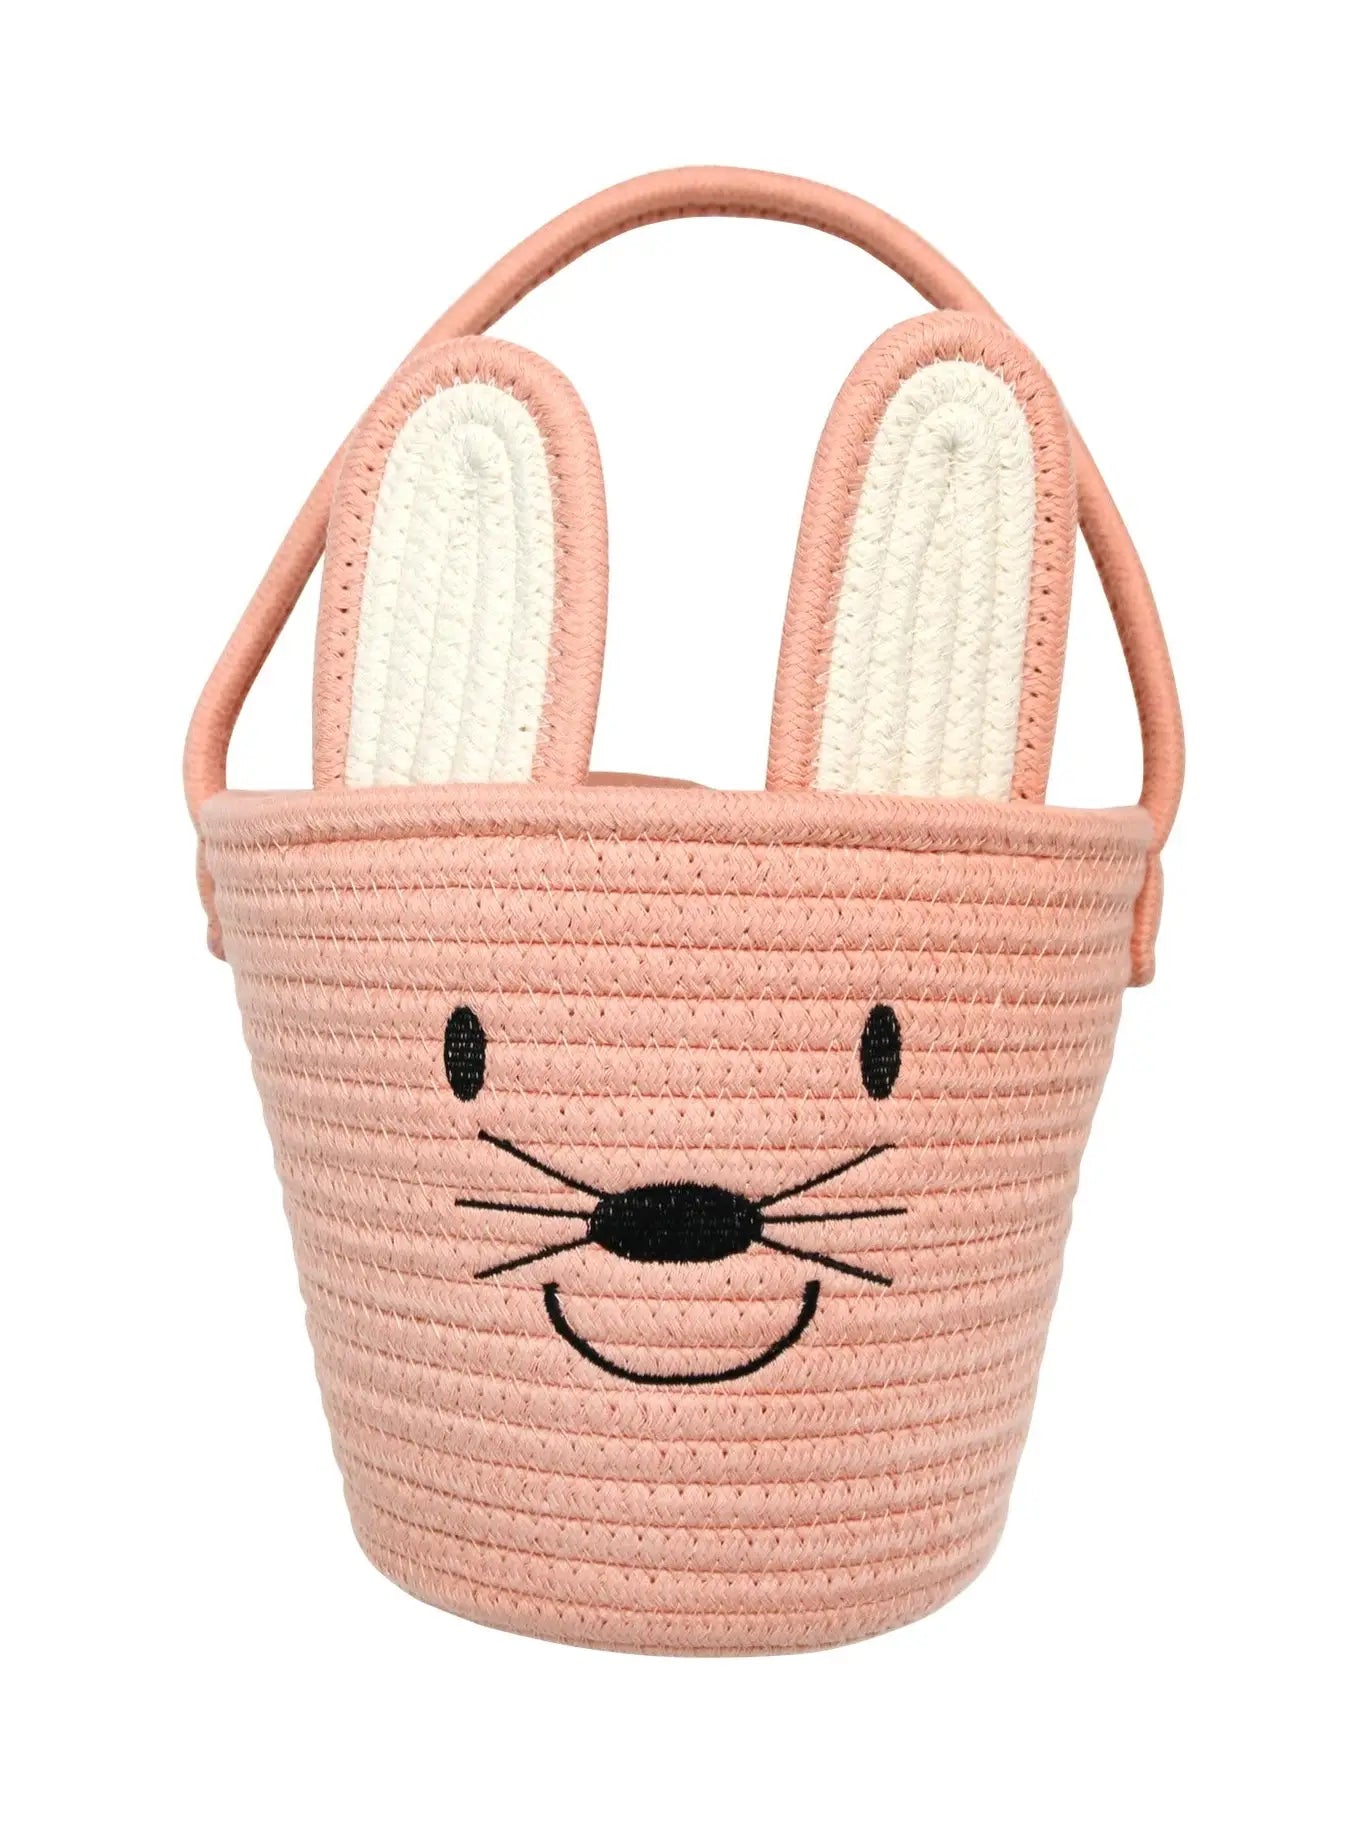 Rope Easter Basket - Pink Bunny - Lulie